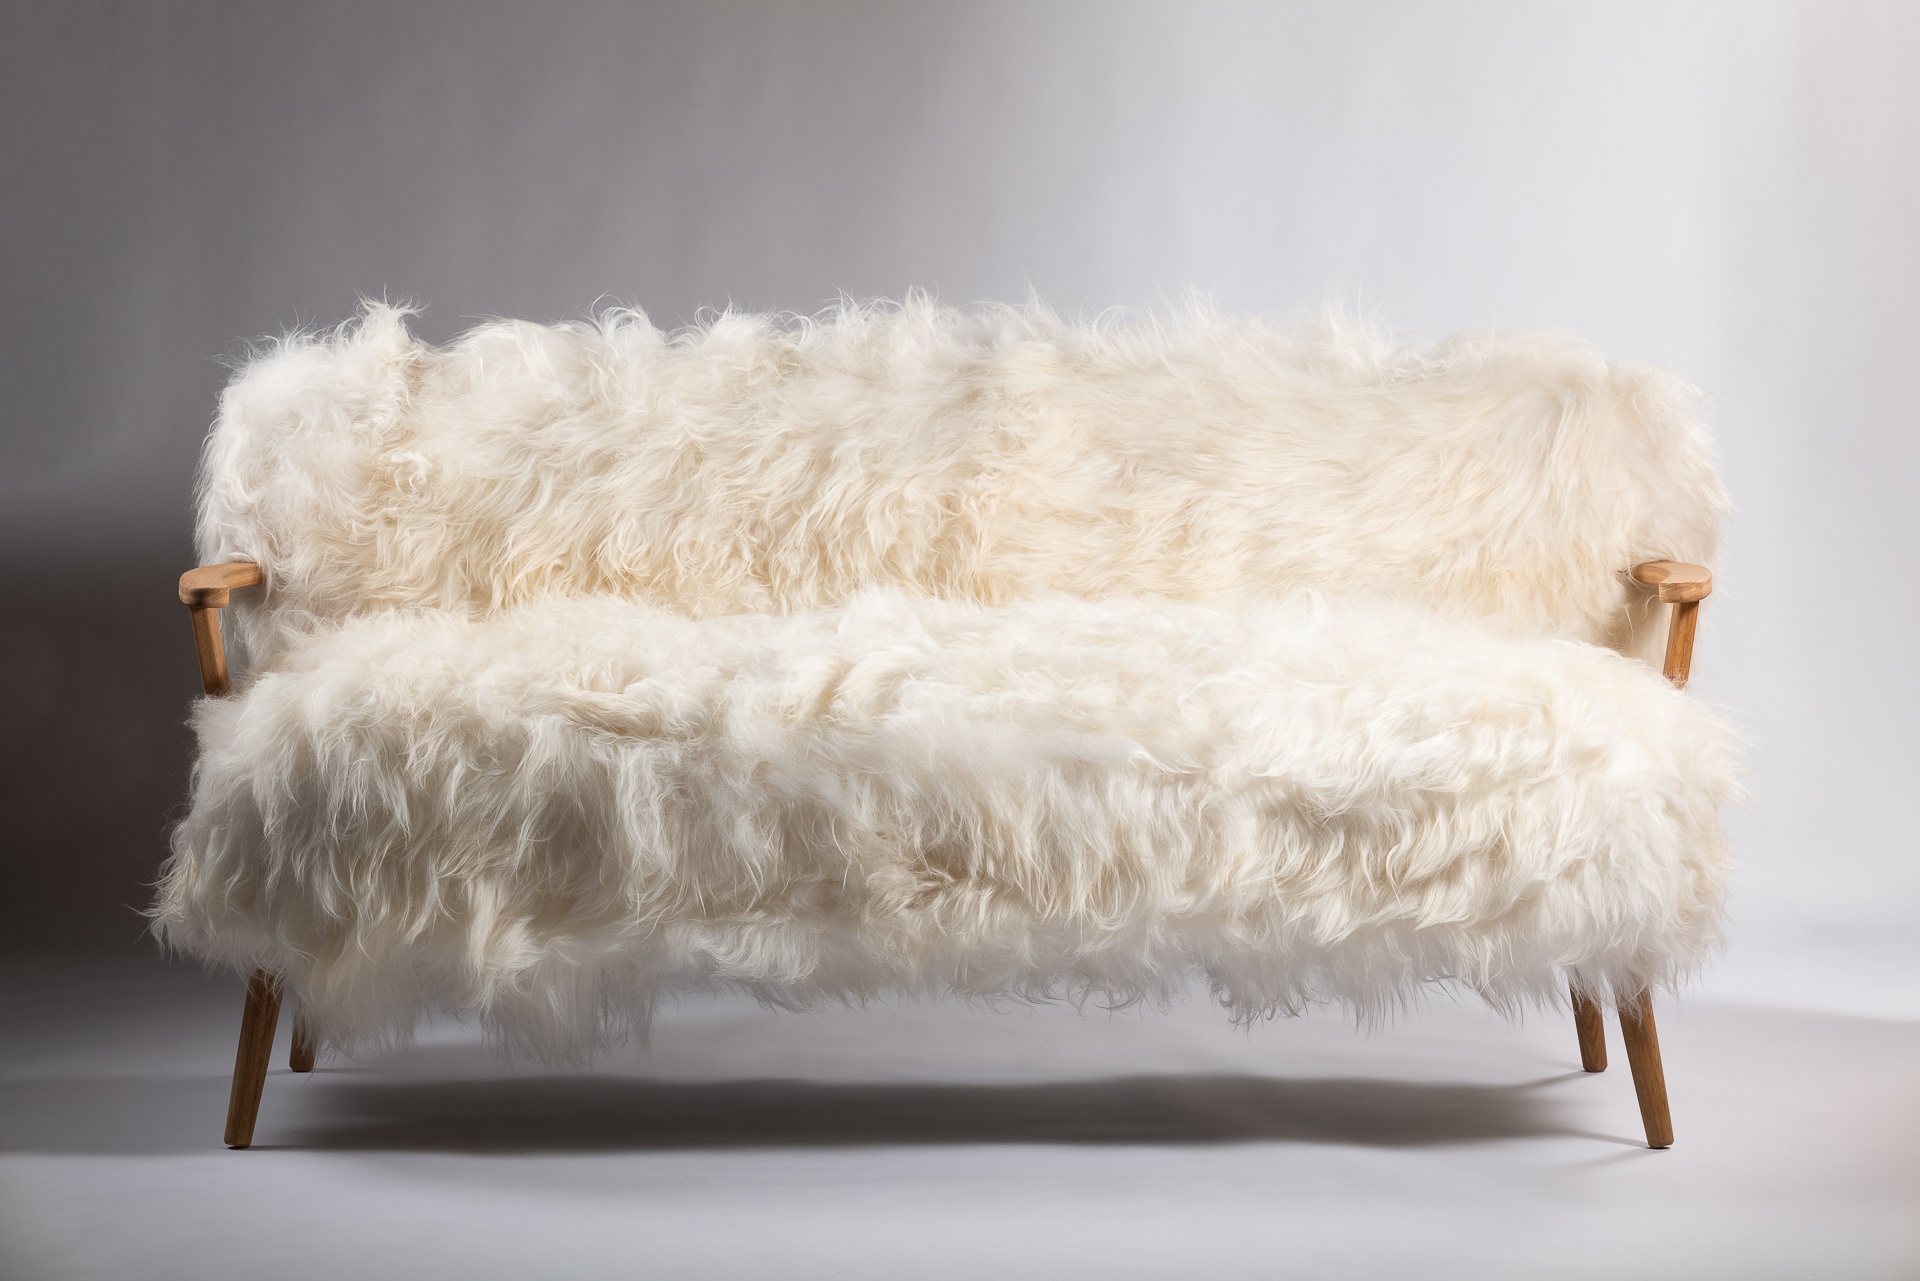 Sofa Alpina : confort luxueux avec un revêtement en mouton blanc, pour des moments de détente inoubliables. Les pieds et les accoudoirs en chêne ajoutent une touche d'élégance naturelle